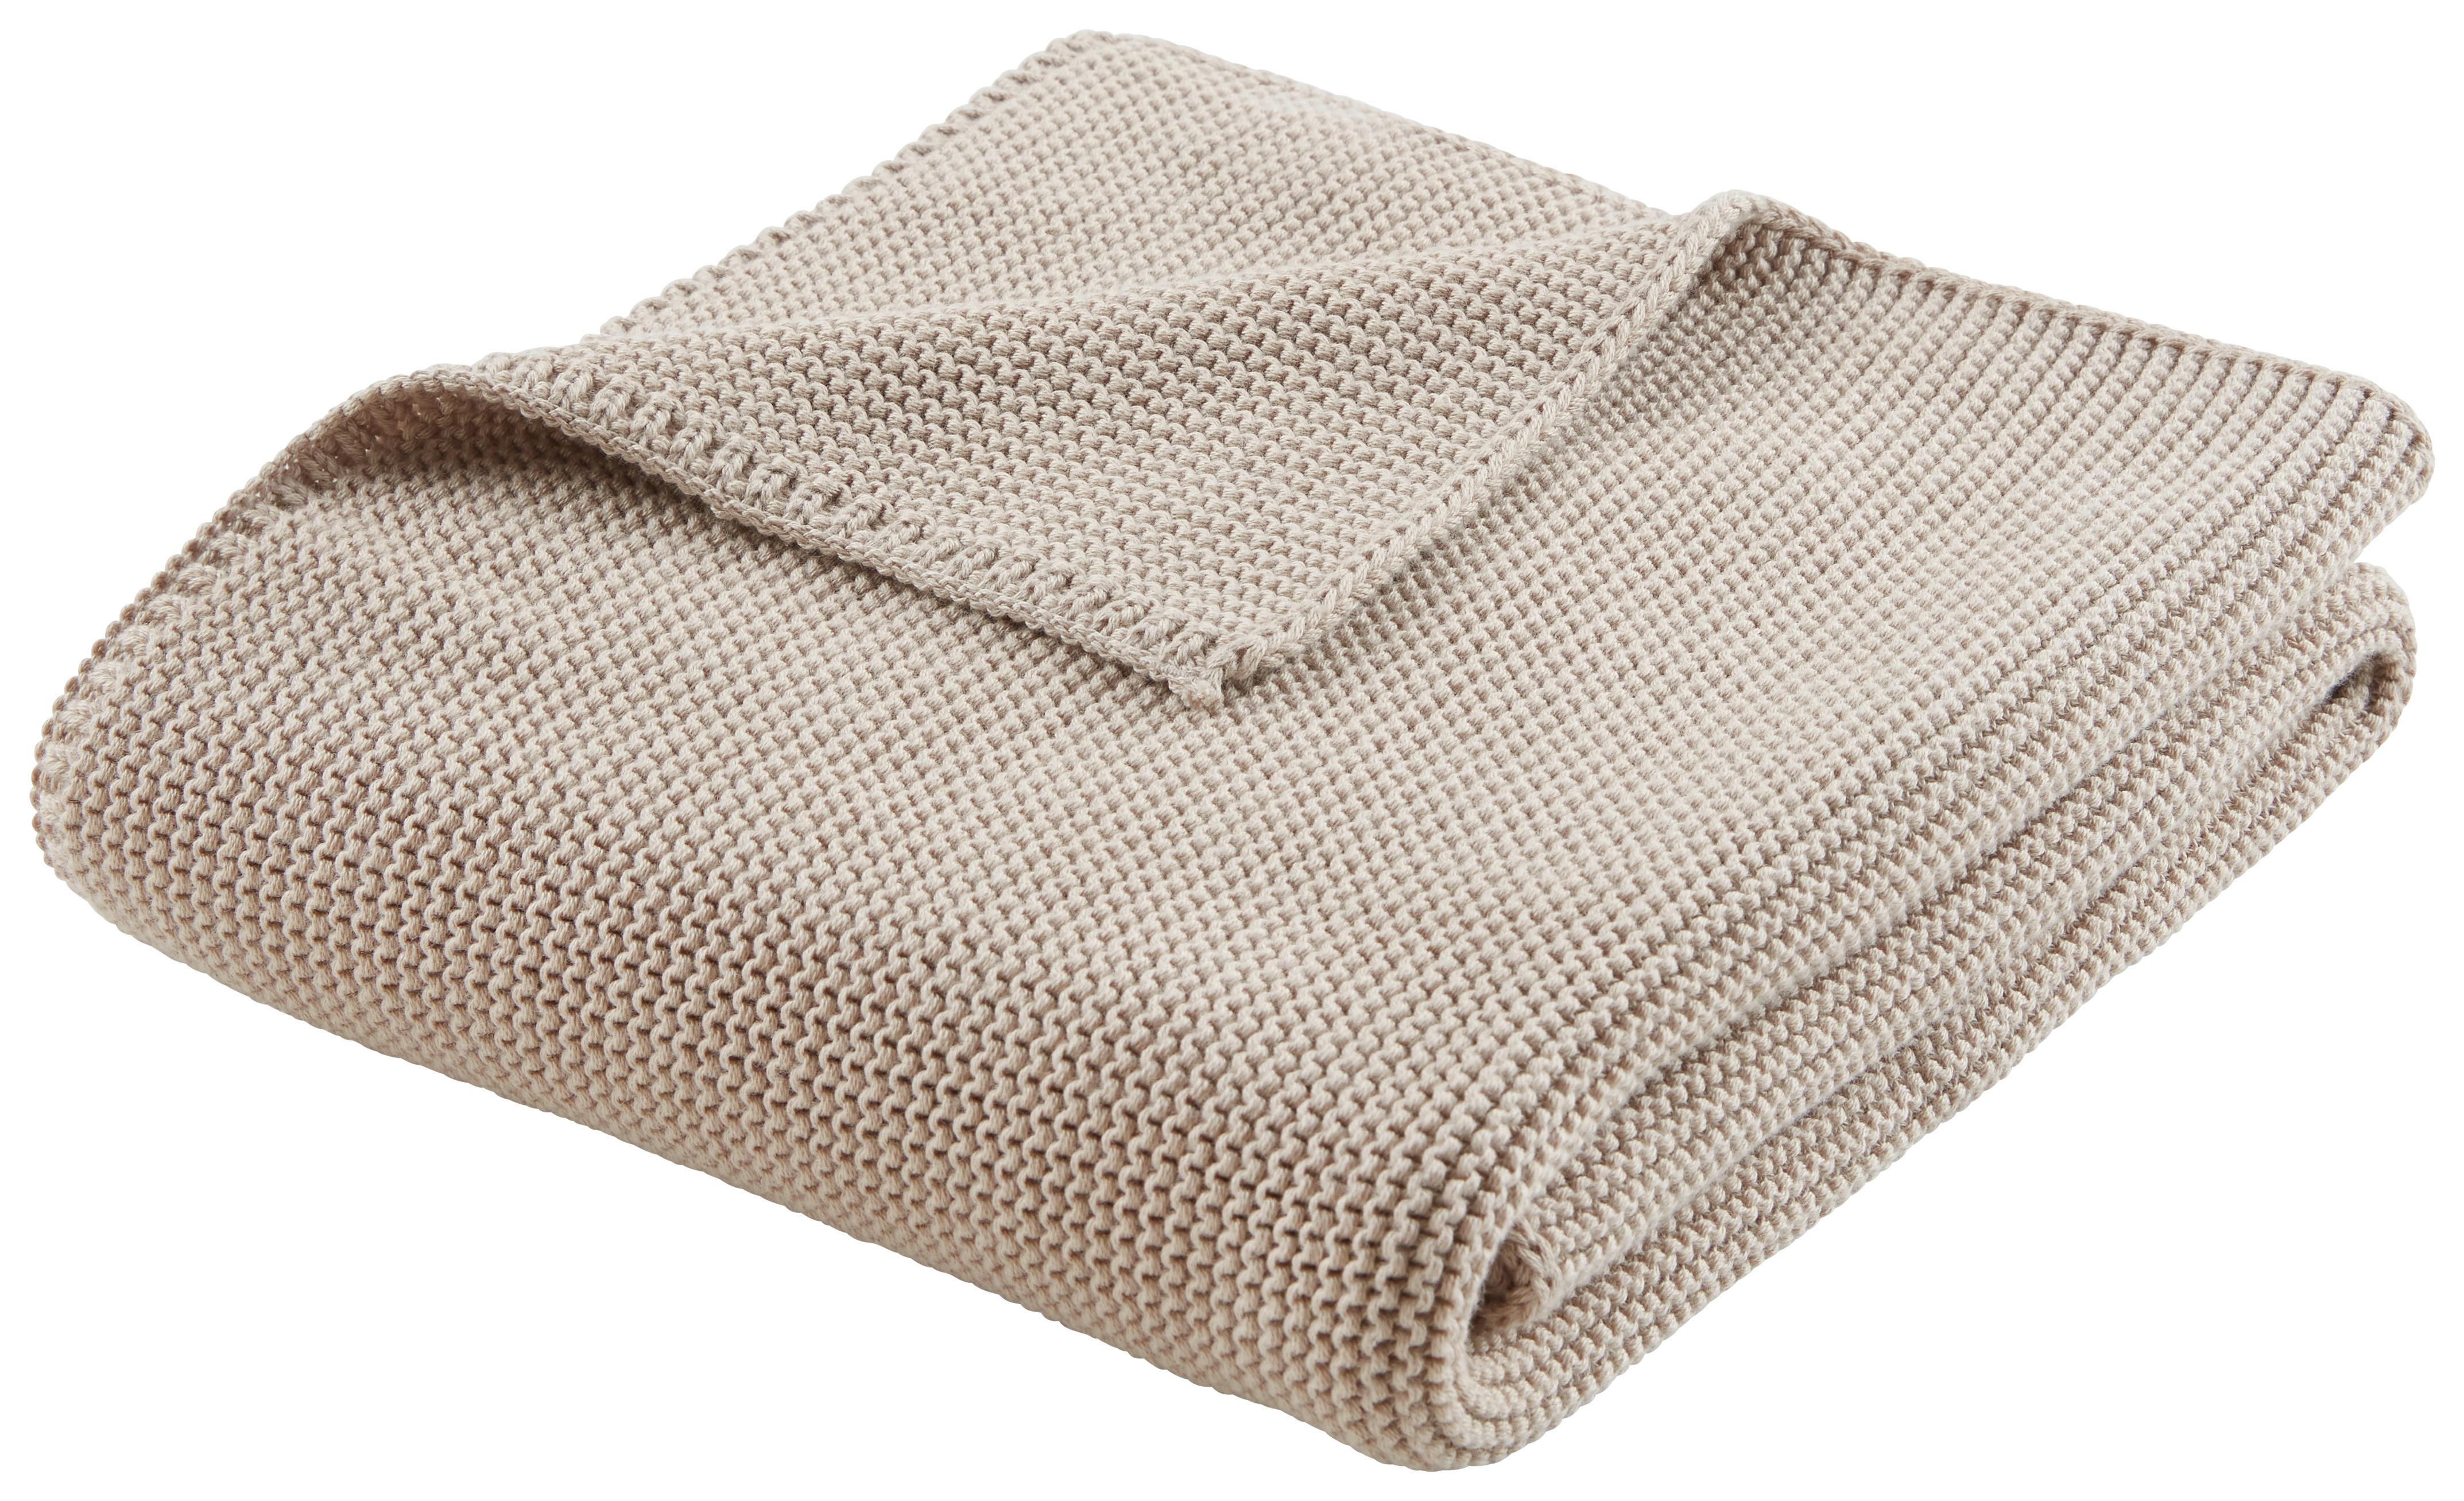 Otroška Odeja Babystrick -Ext- - siva, Konvencionalno, tekstil (75/100cm) - Premium Living